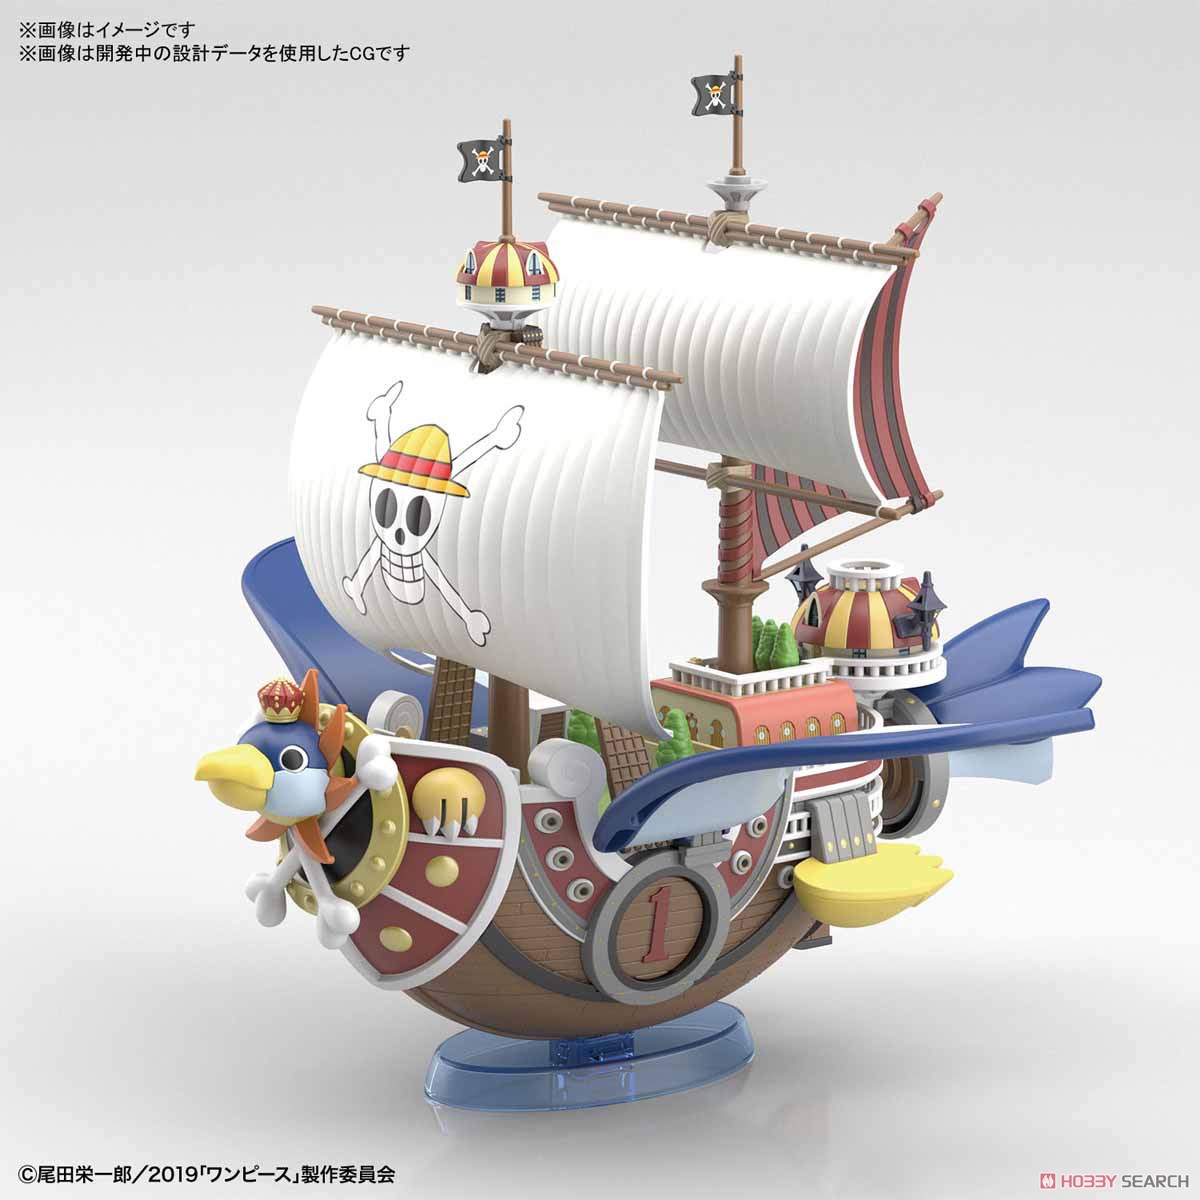 偉大なる船コレクション『サウザンド・サニー号 フライングモデル』ワンピース プラモデル-004